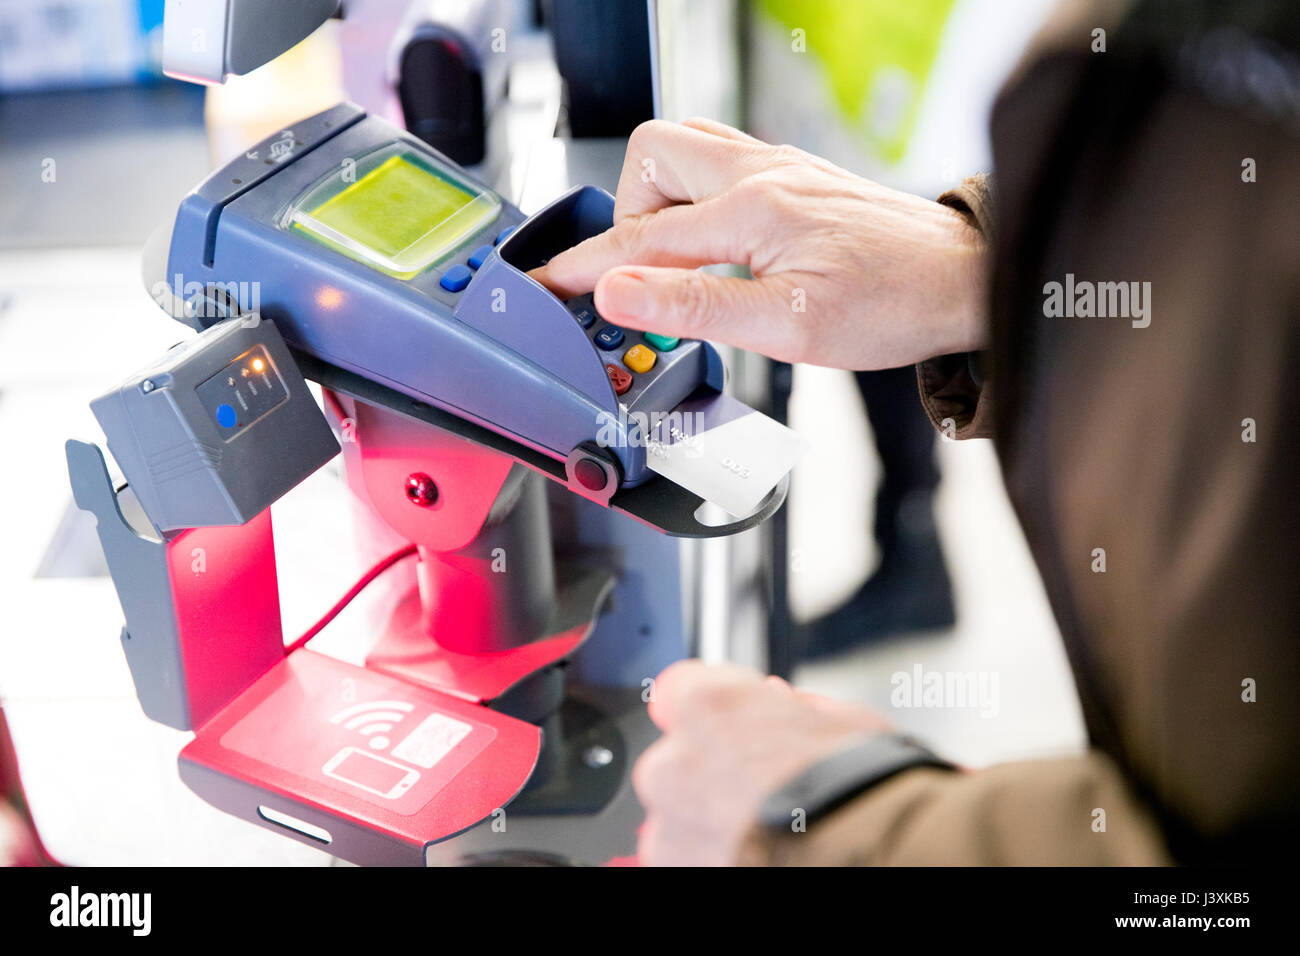 Reife Frau mit Kreditkarte Maschine für den Einkauf zu bezahlen, close-up Stockfoto